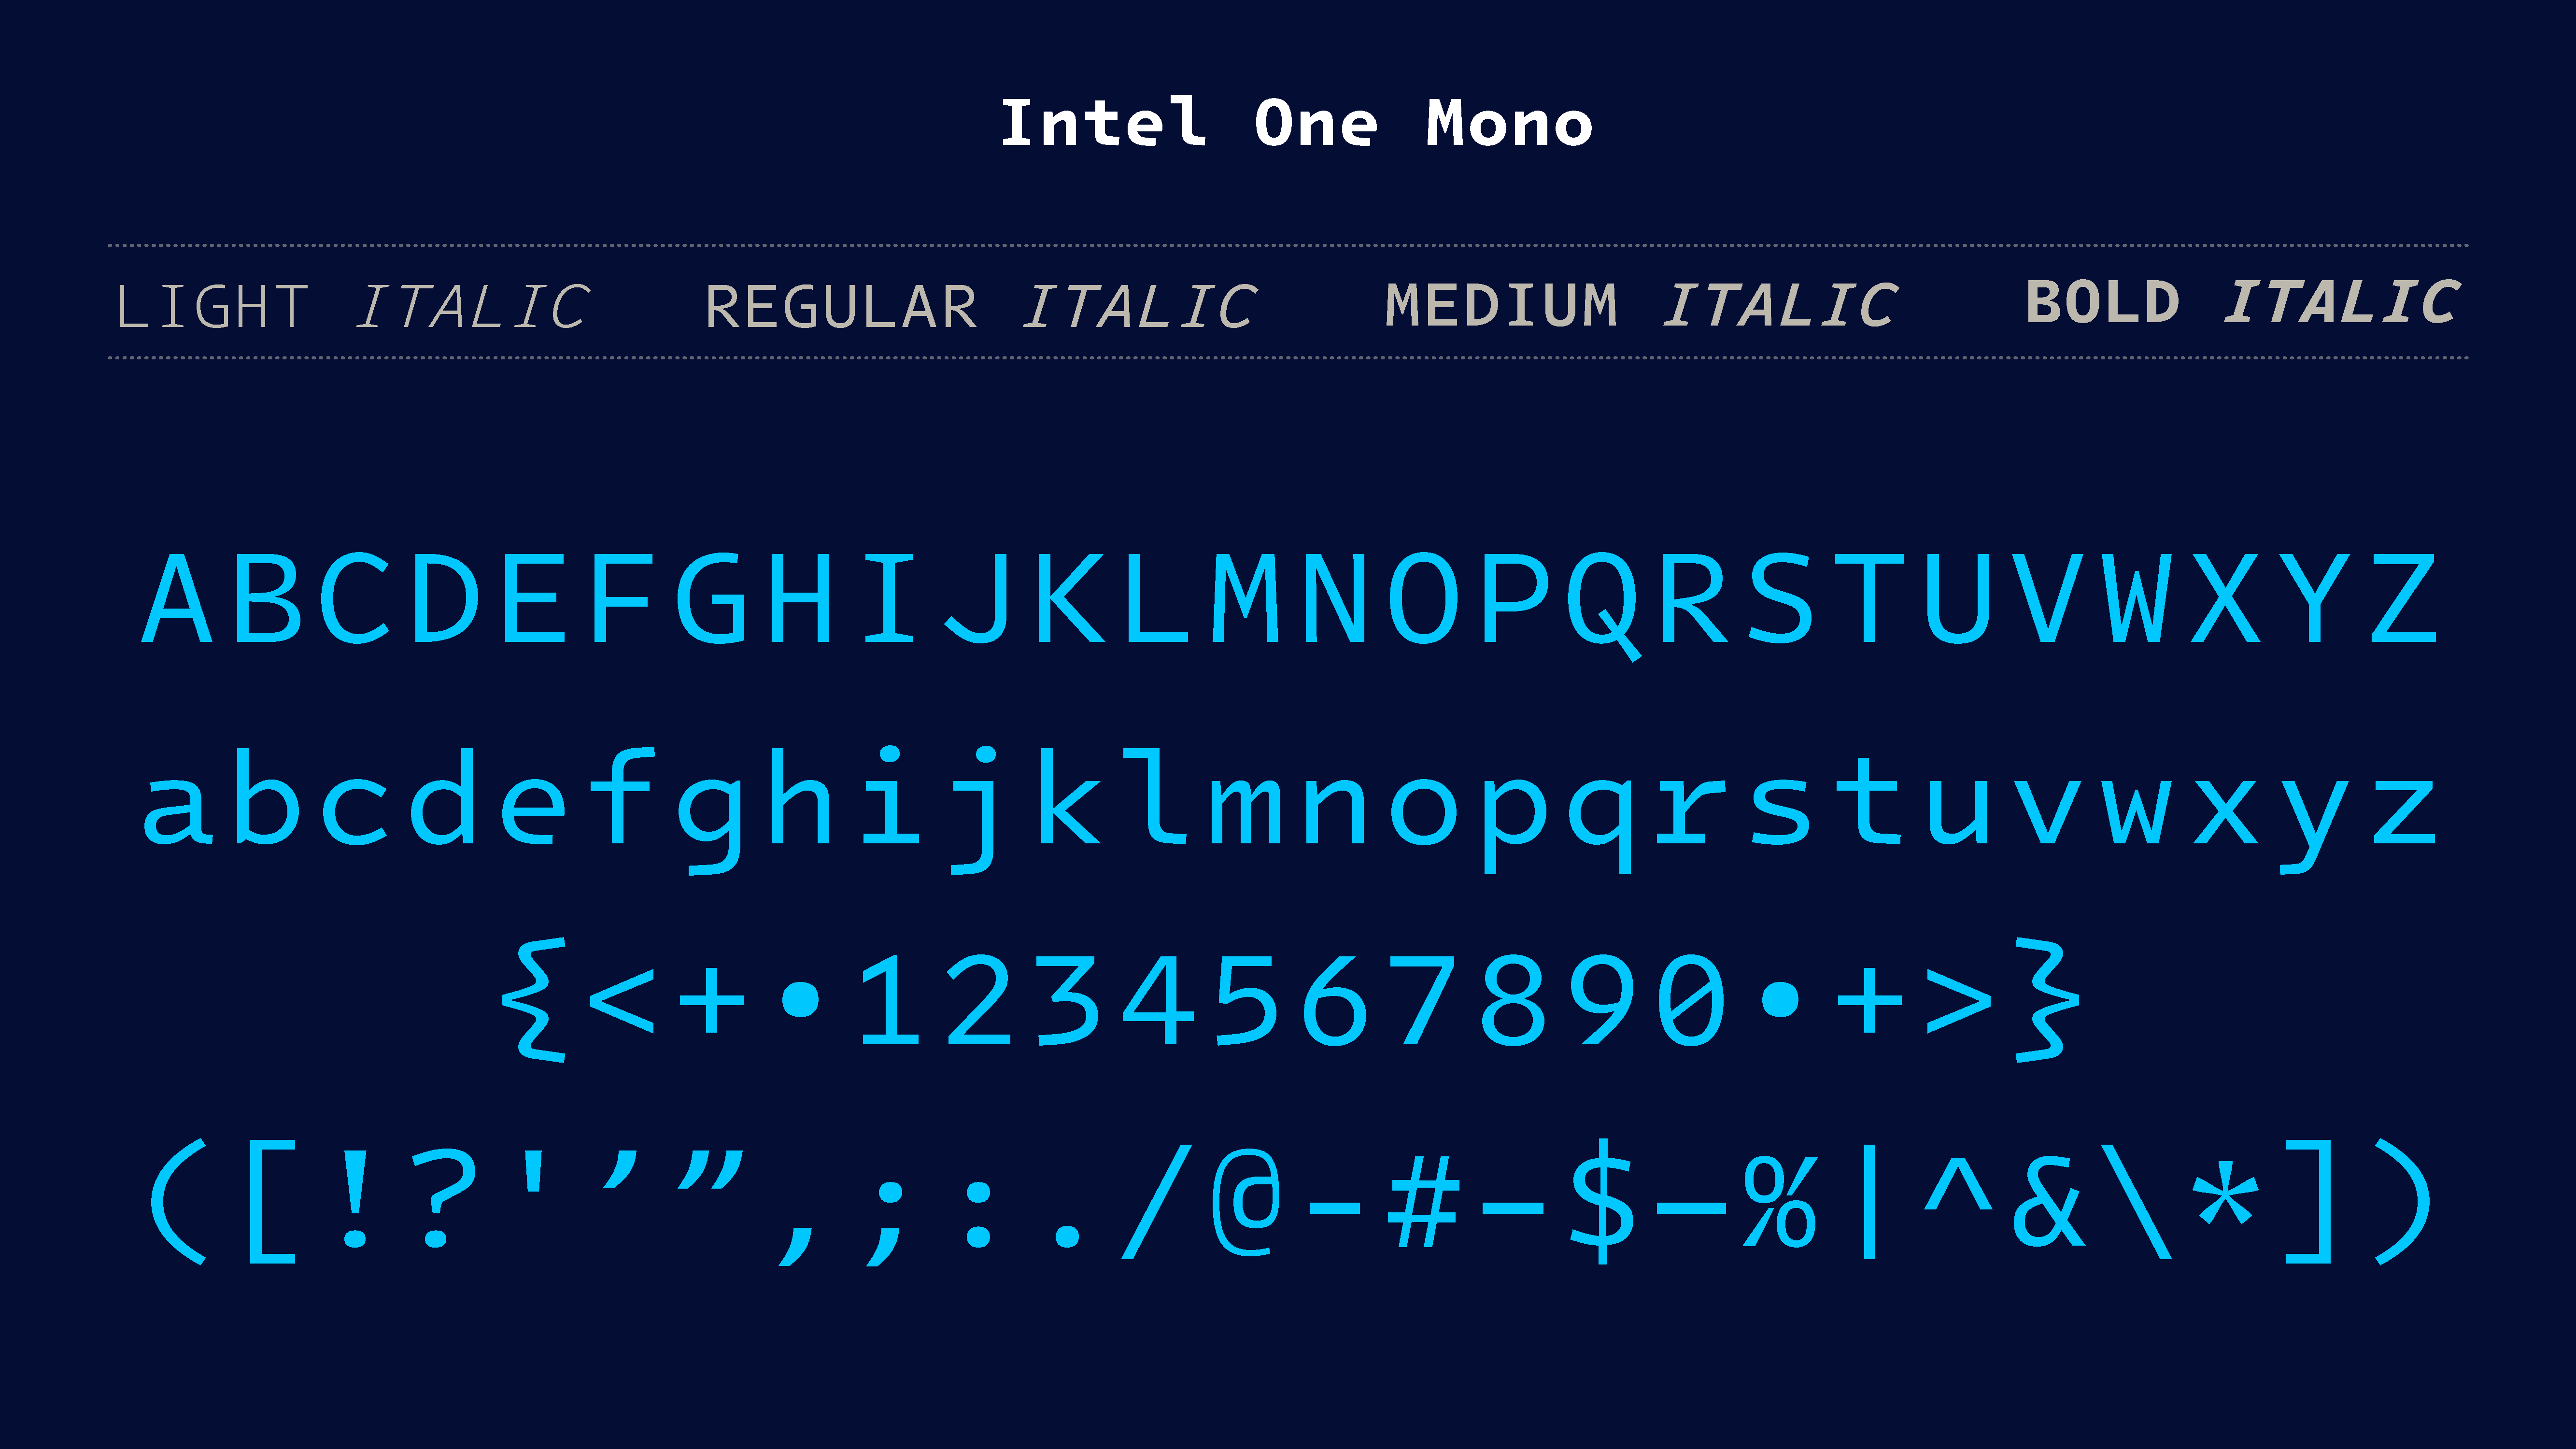 อินเทลแจกฟอนต์สำหรับเขียนโค้ด Intel One Mono เป็นฟอนต์แบบ monospace ความกว้างเท่ากันทุกตัวอักษร เน้นความอ่านง่าย สบายตา ช่วยลดการล้าของสายตาโปรแกรมเมอร์